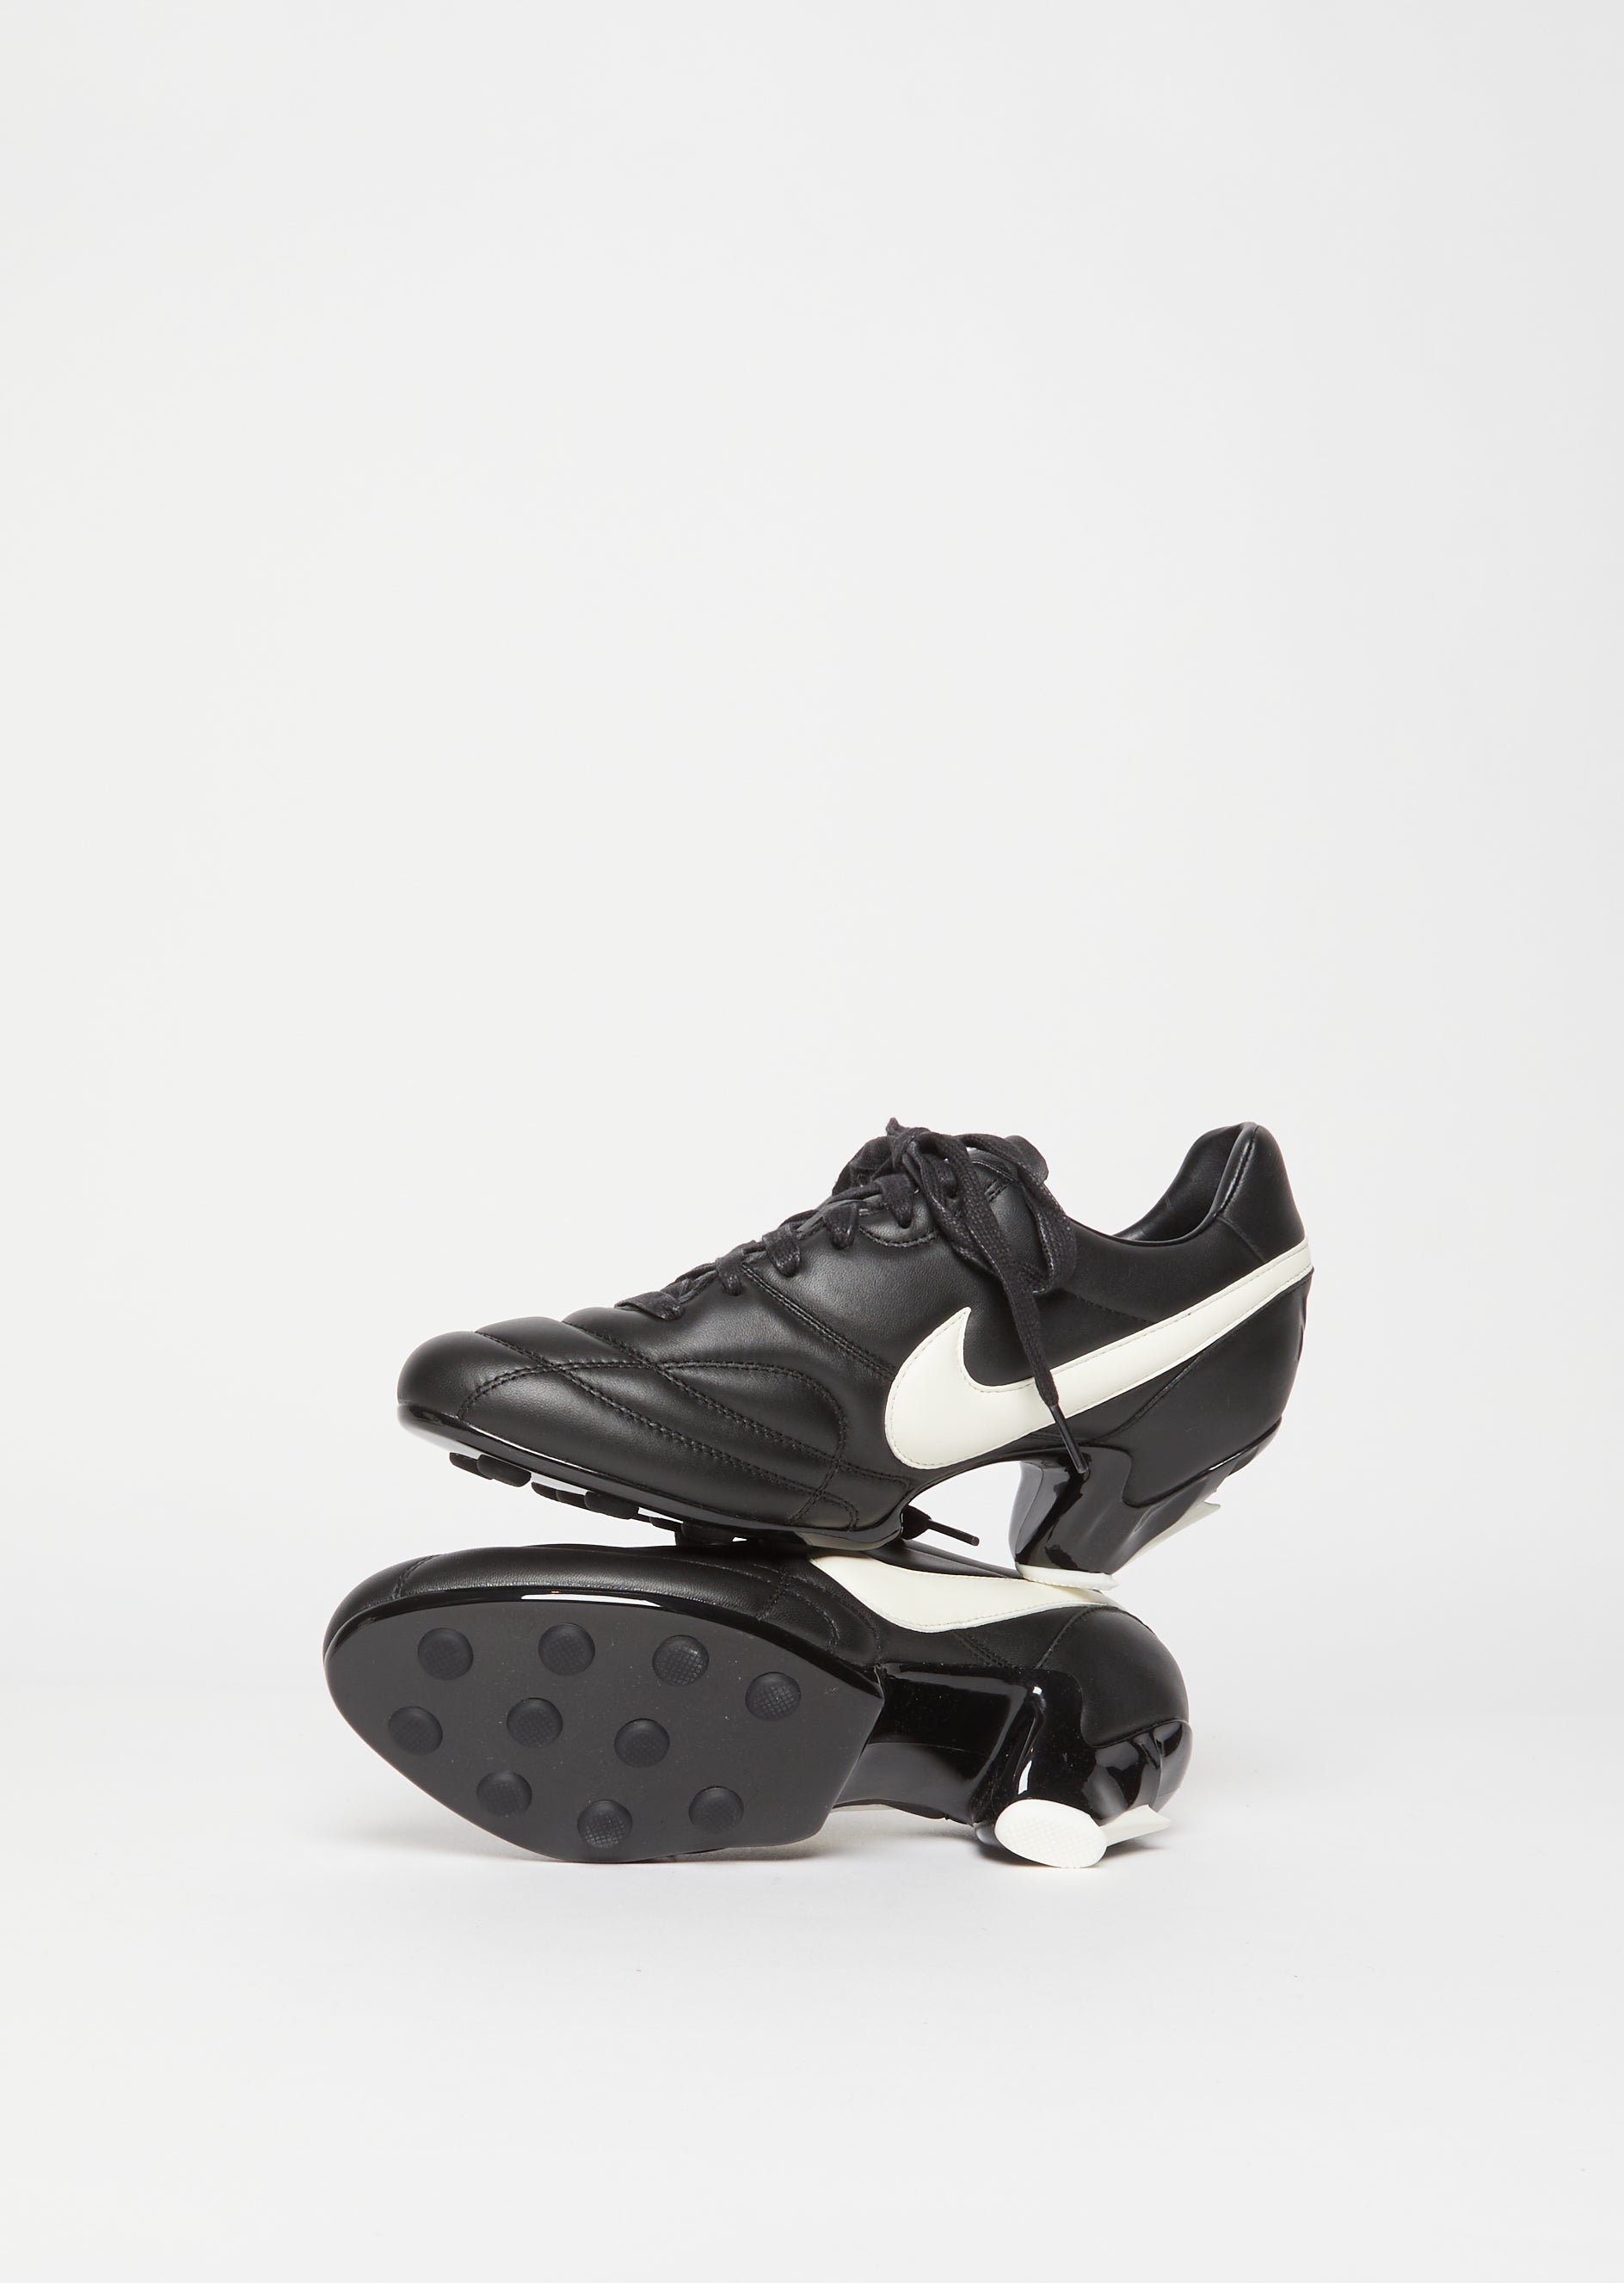 Comme des Garçons x Nike Premier Heeled Sneakers — Black – La Garçonne